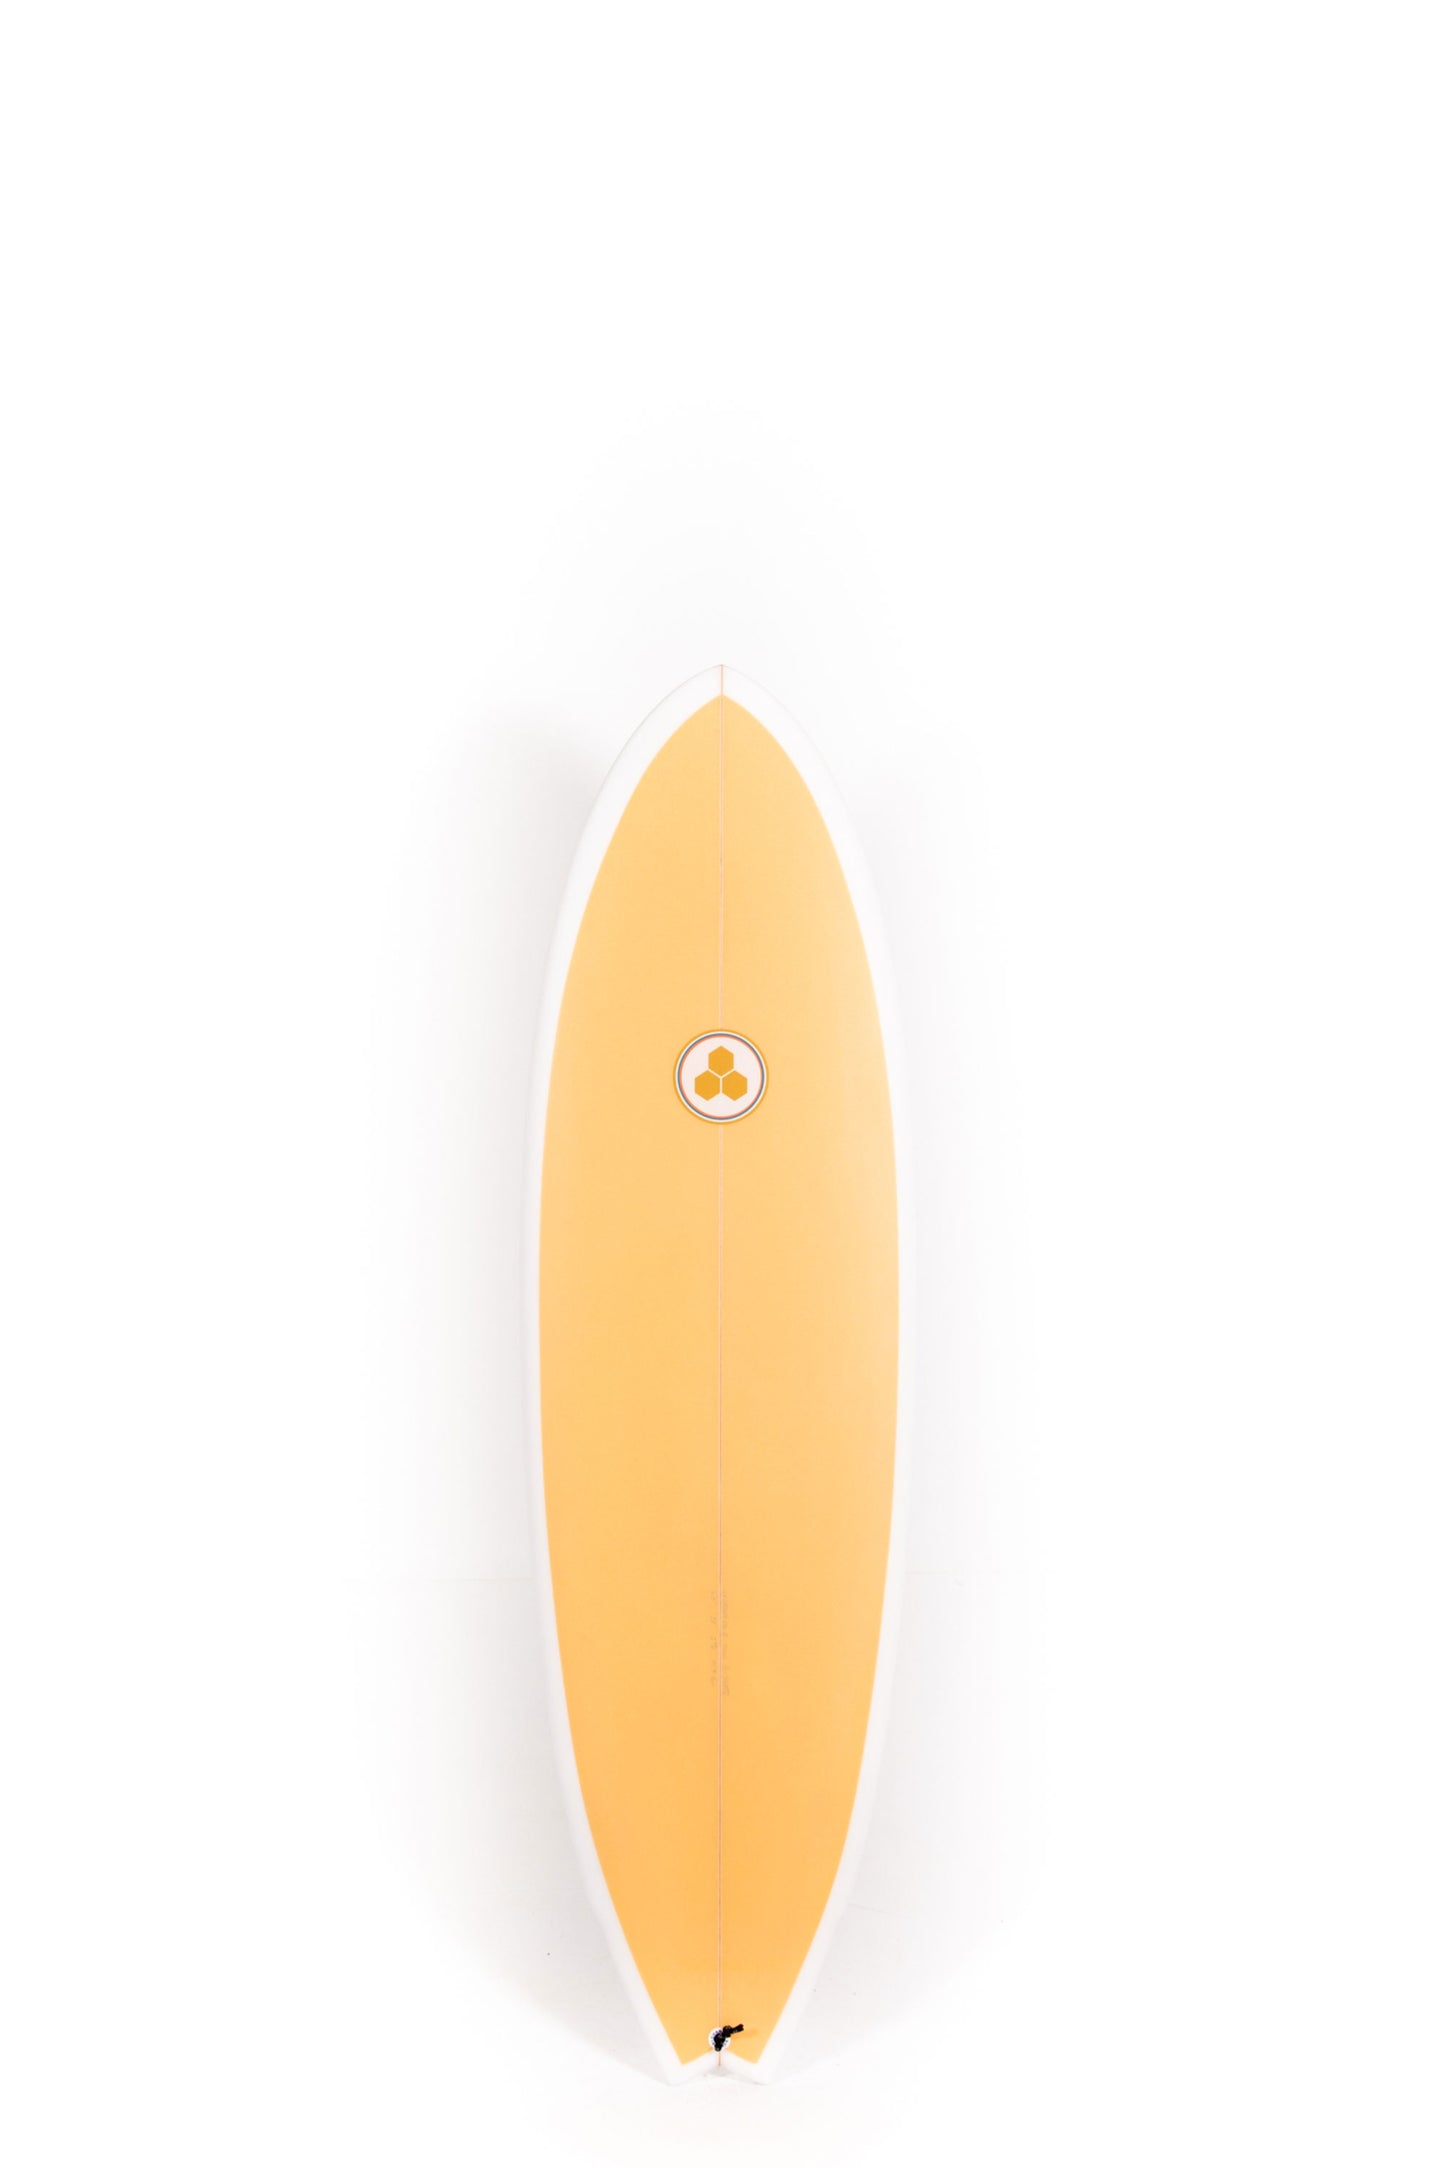 ONE PIECES – PUKAS SURF SHOP